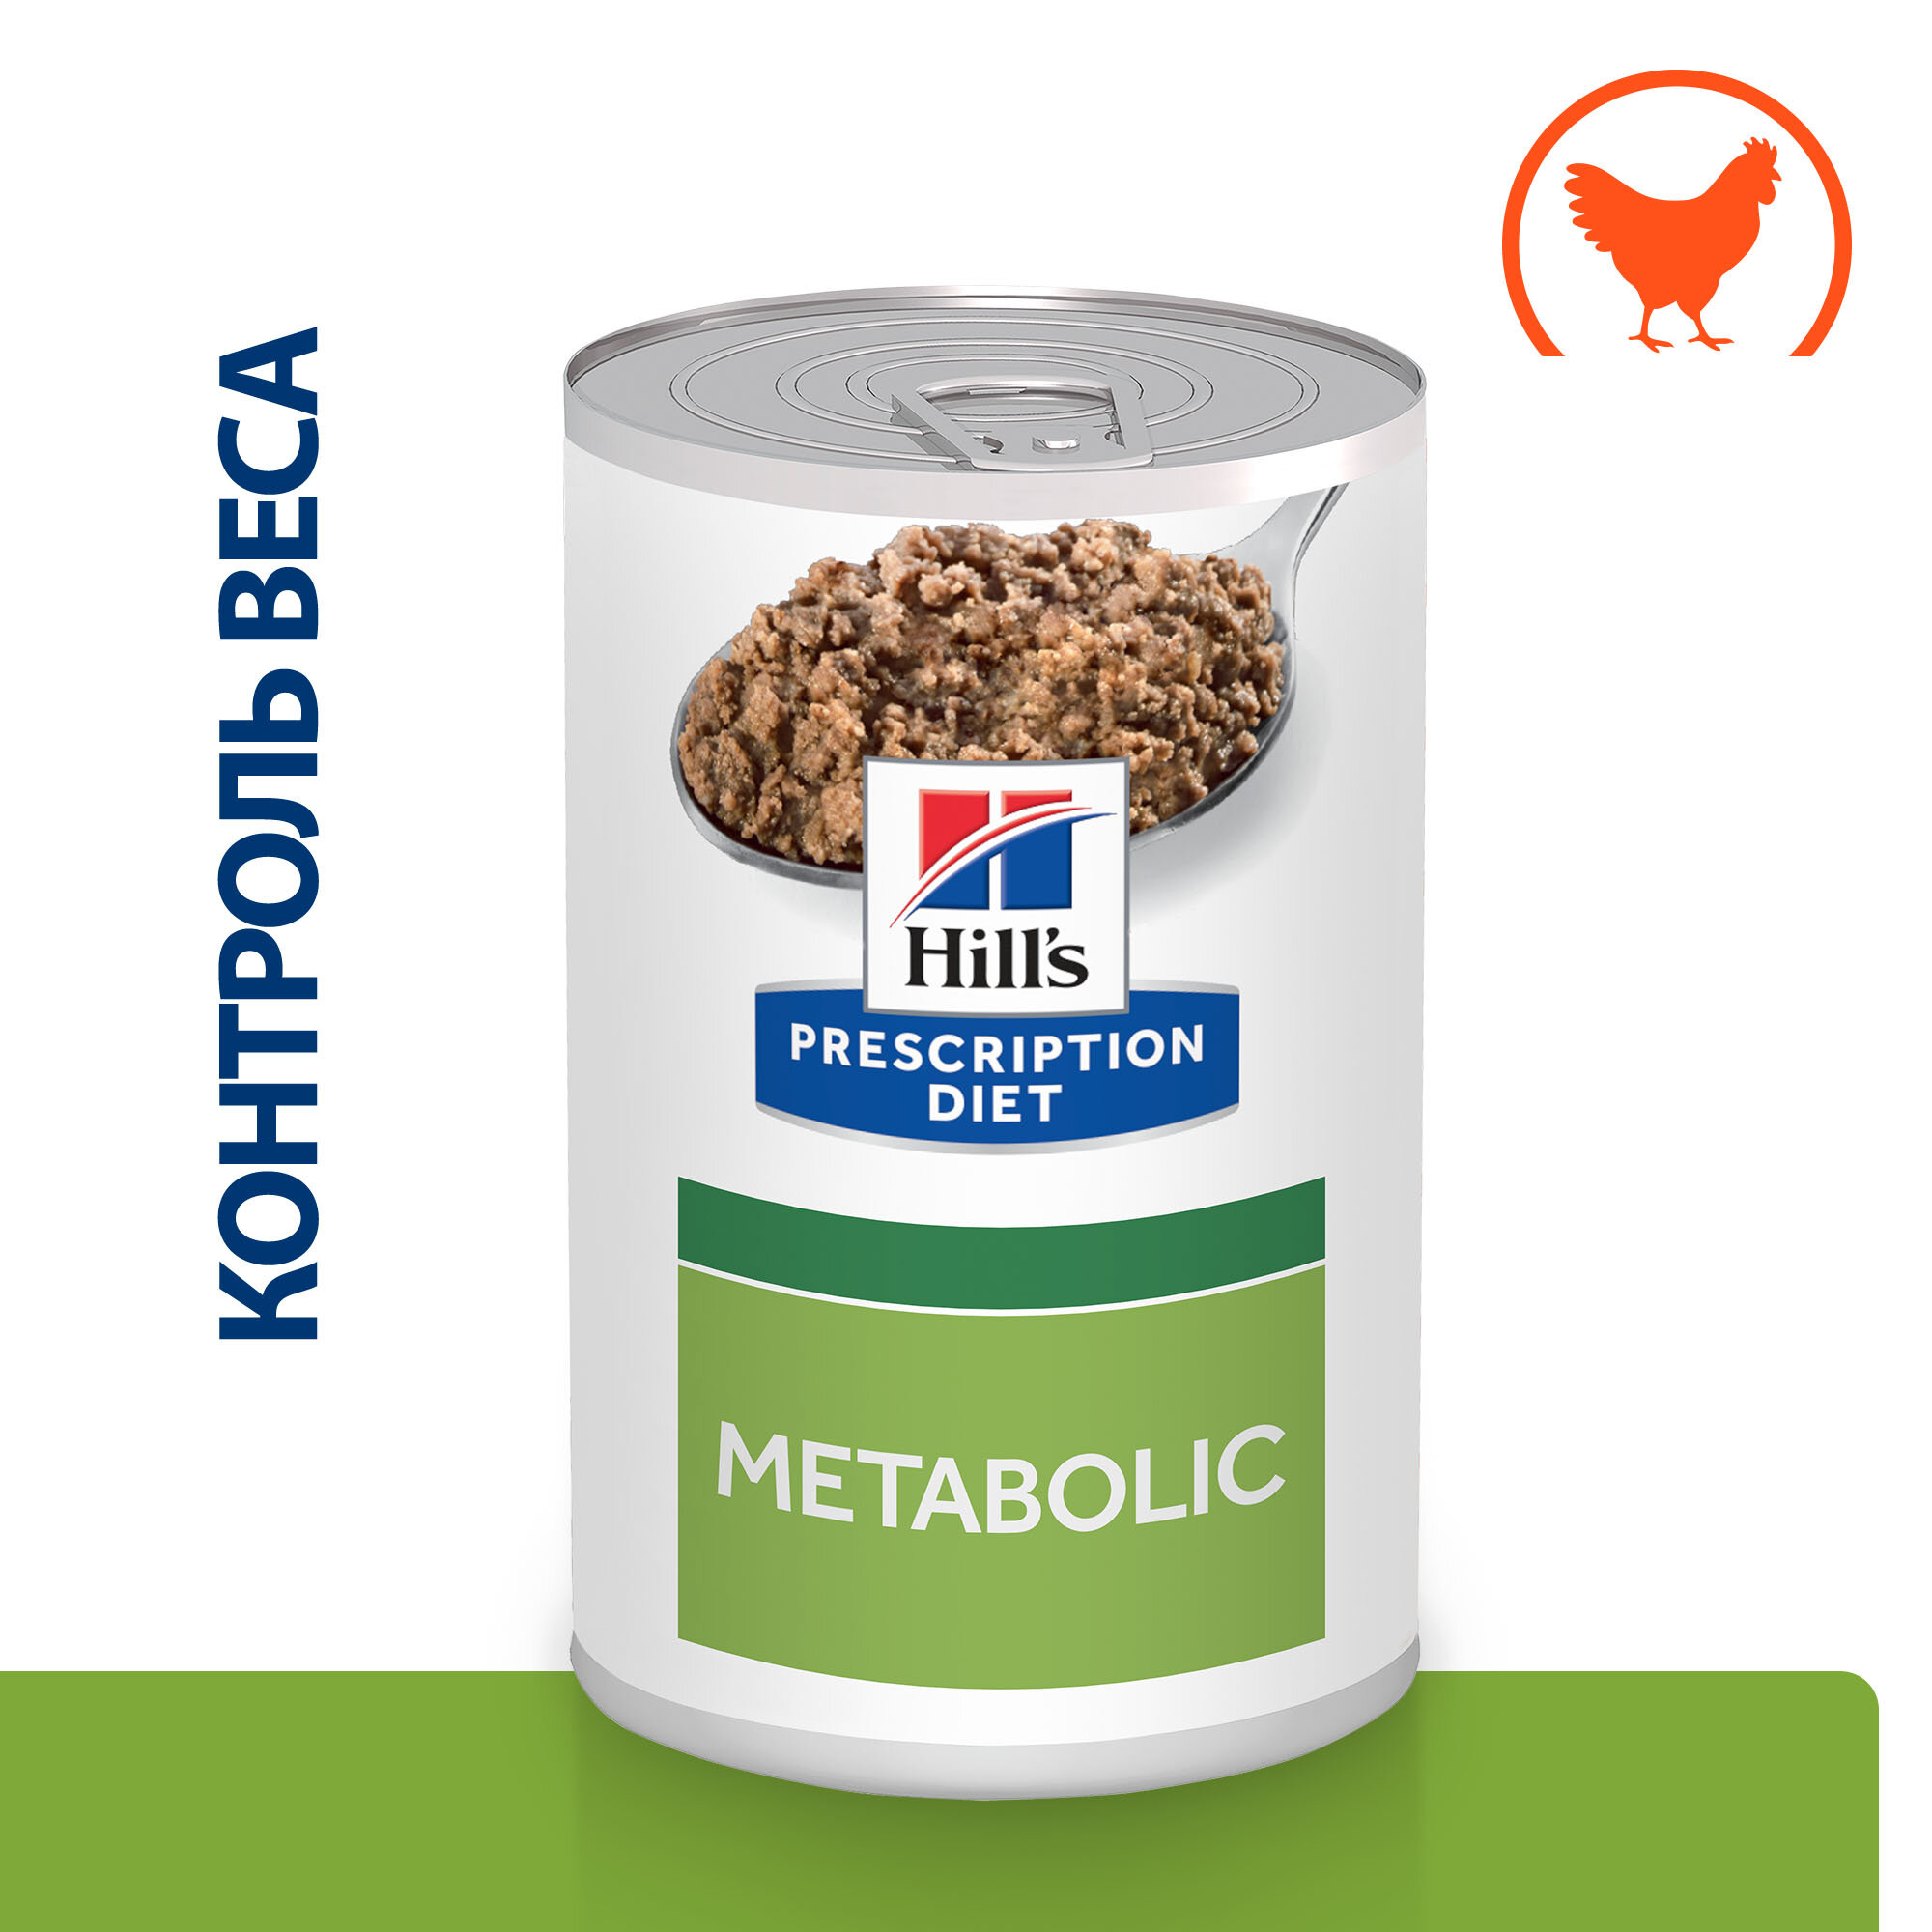 Hill's Prescription Diet Metabolic Weight Management консервы для собак диета для поддержания веса Курица, 200 г. упаковка 12 шт